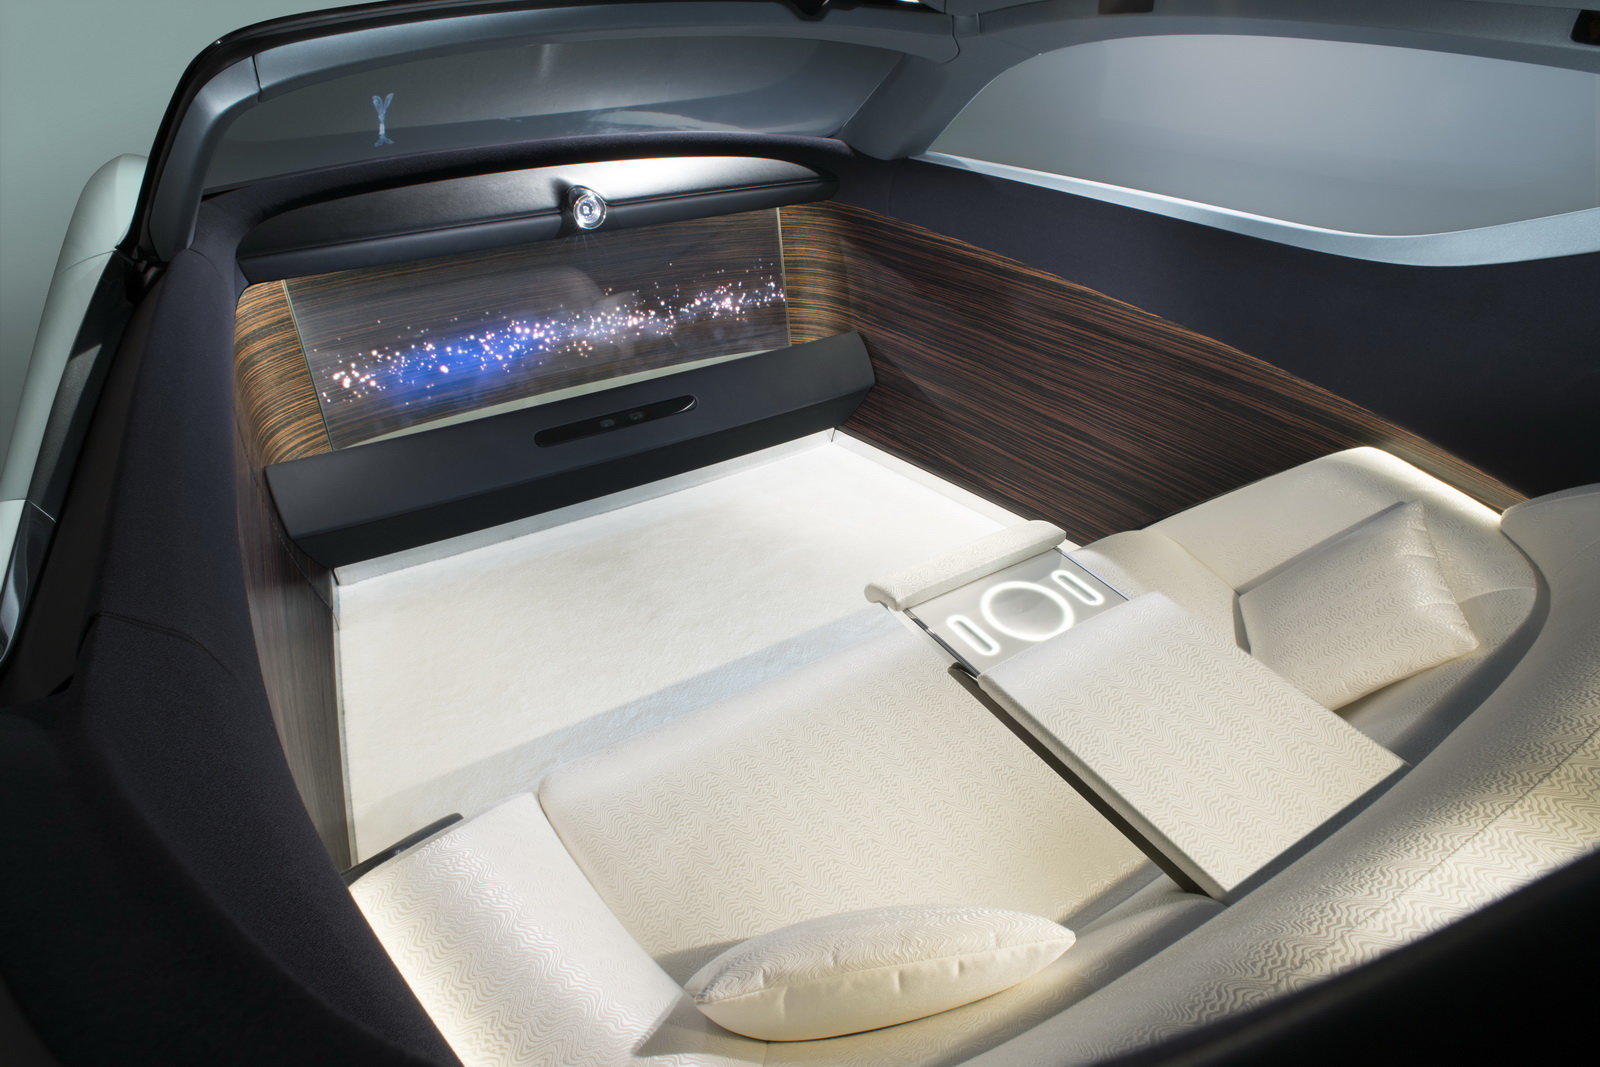 Rolls-Royce Vision Next 100 je vizionářským pohledem do budoucnosti.